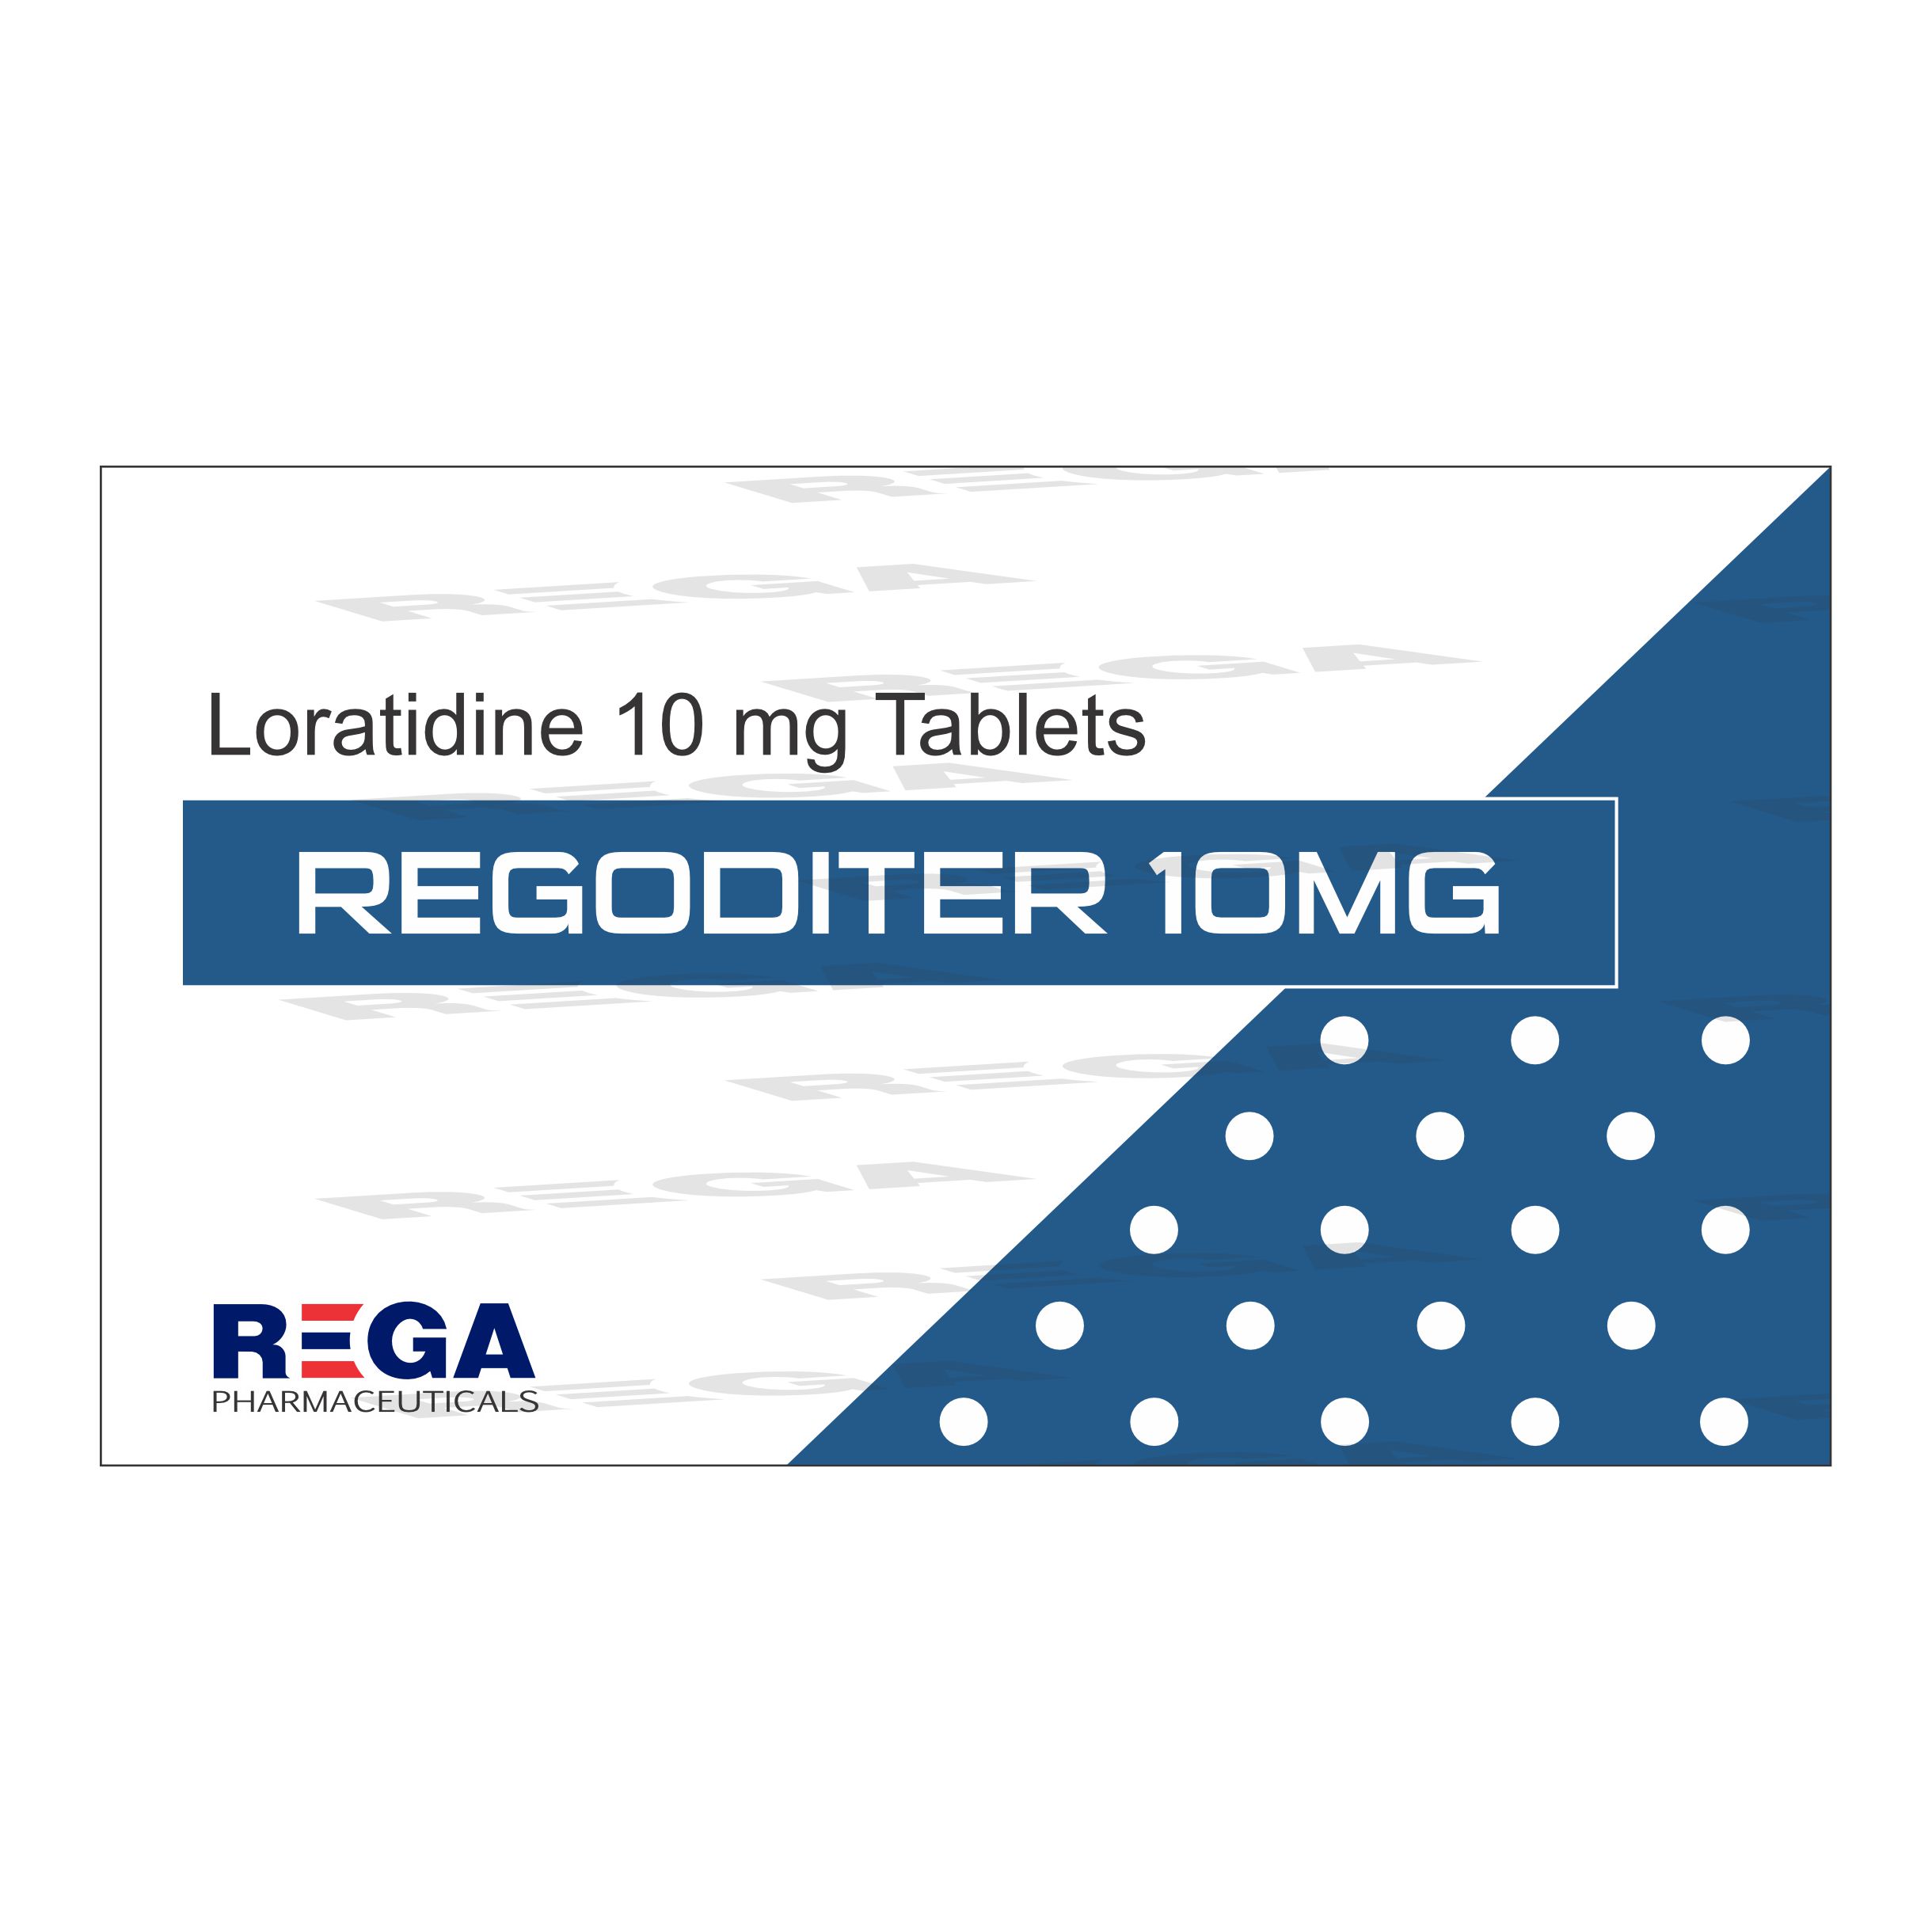 Loratidine 10 mg Tablets